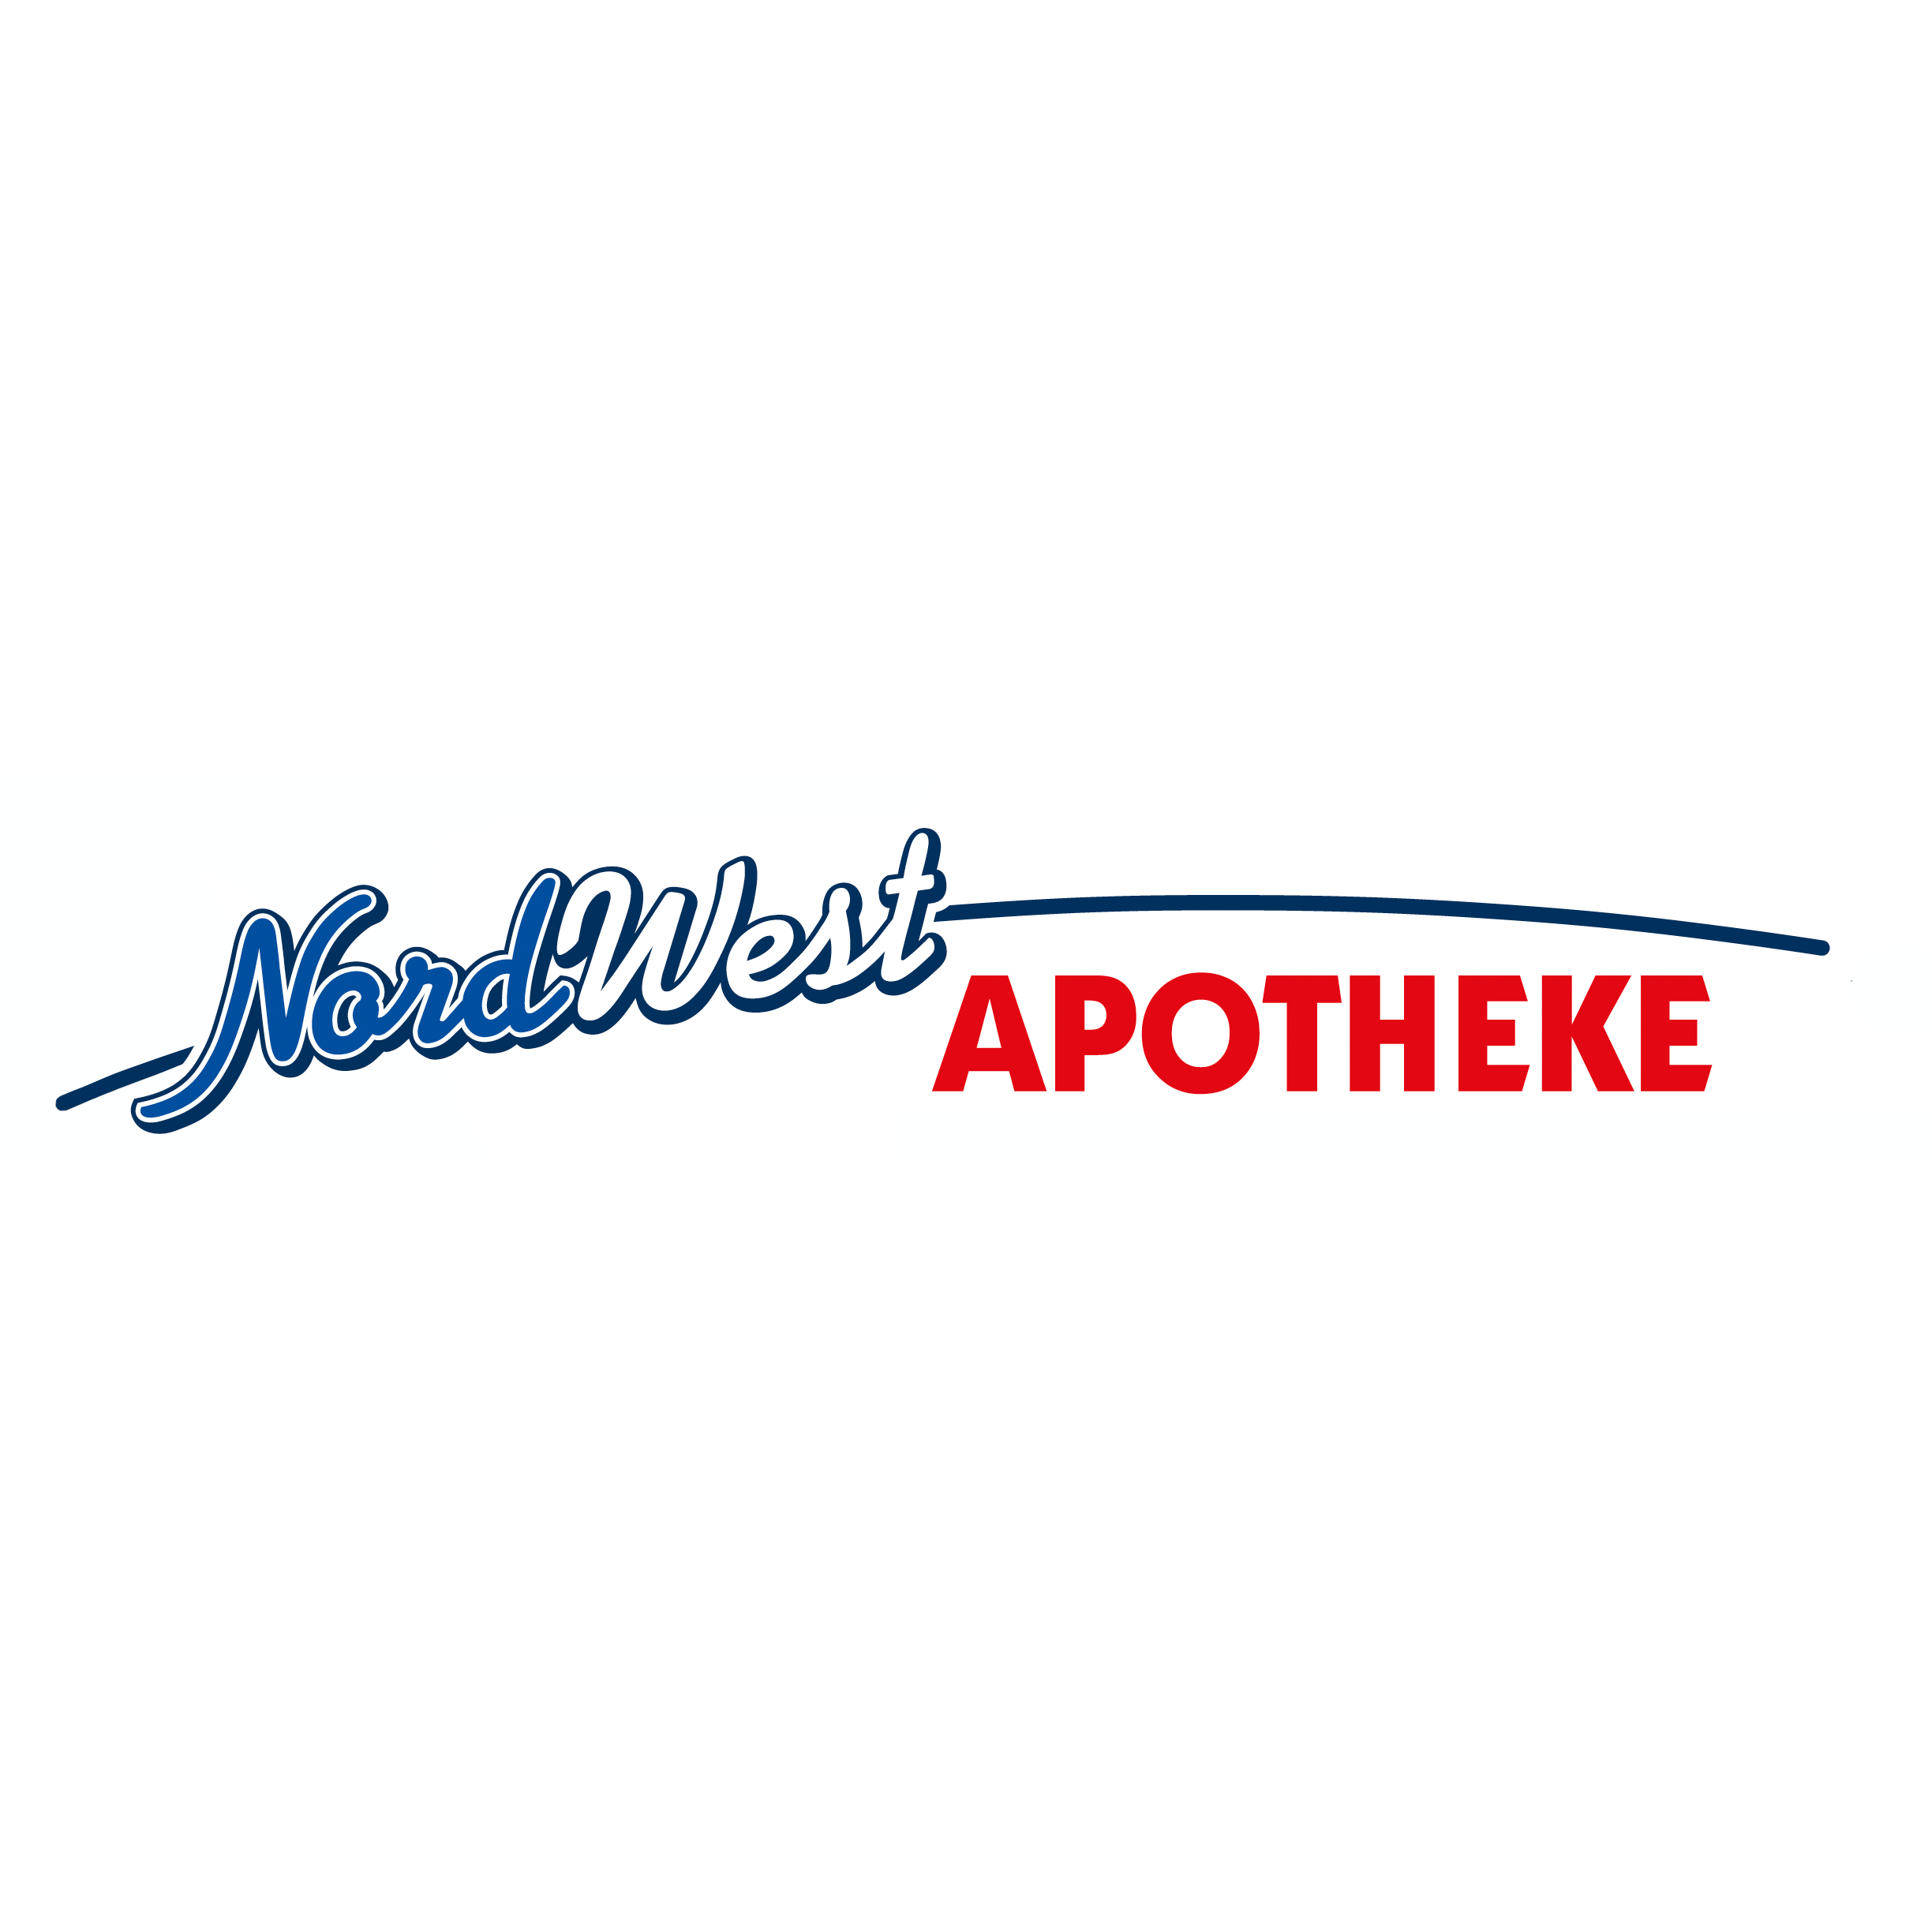 Nordwest-Apotheke in Cuxhaven - Logo